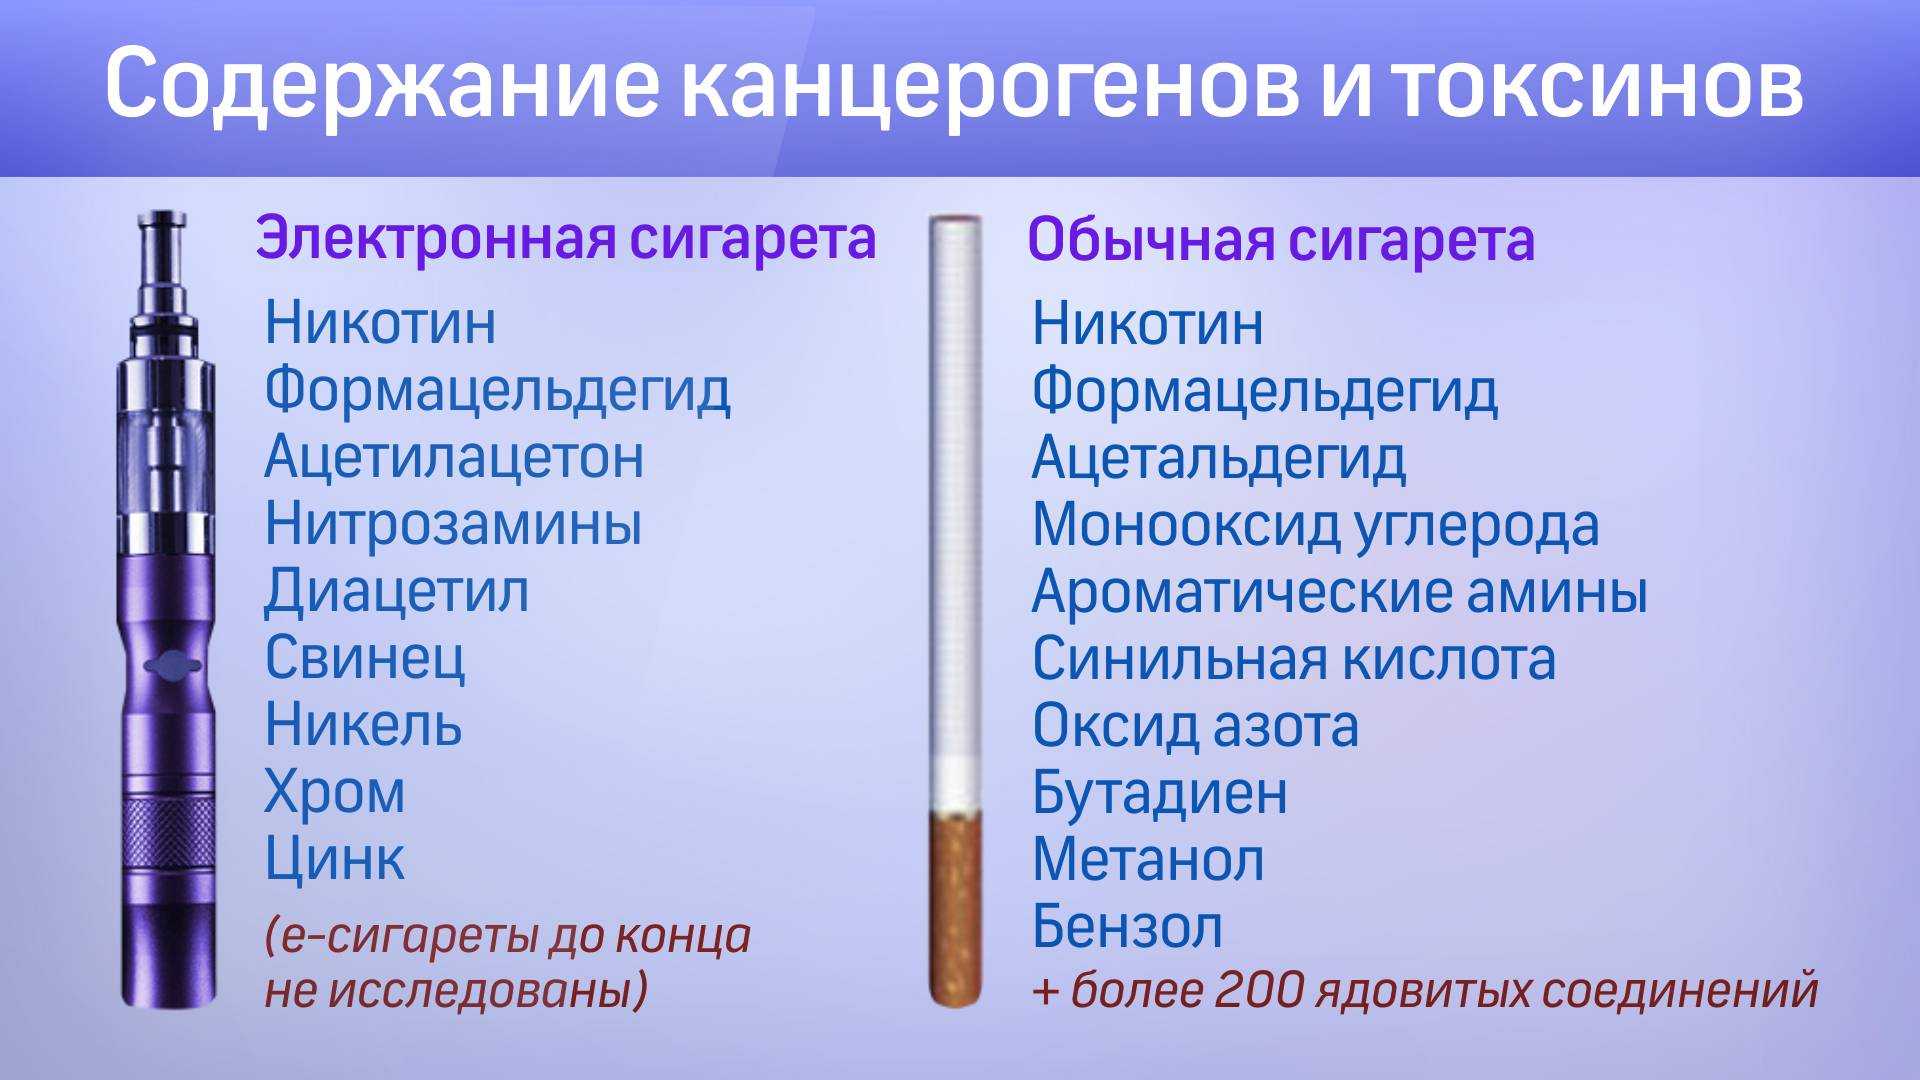 Срок годности электронной сигареты. Электрическая сигарета. Курение электронных сигарет. Вред от электронных сигарет. Электронные сигареты фото.